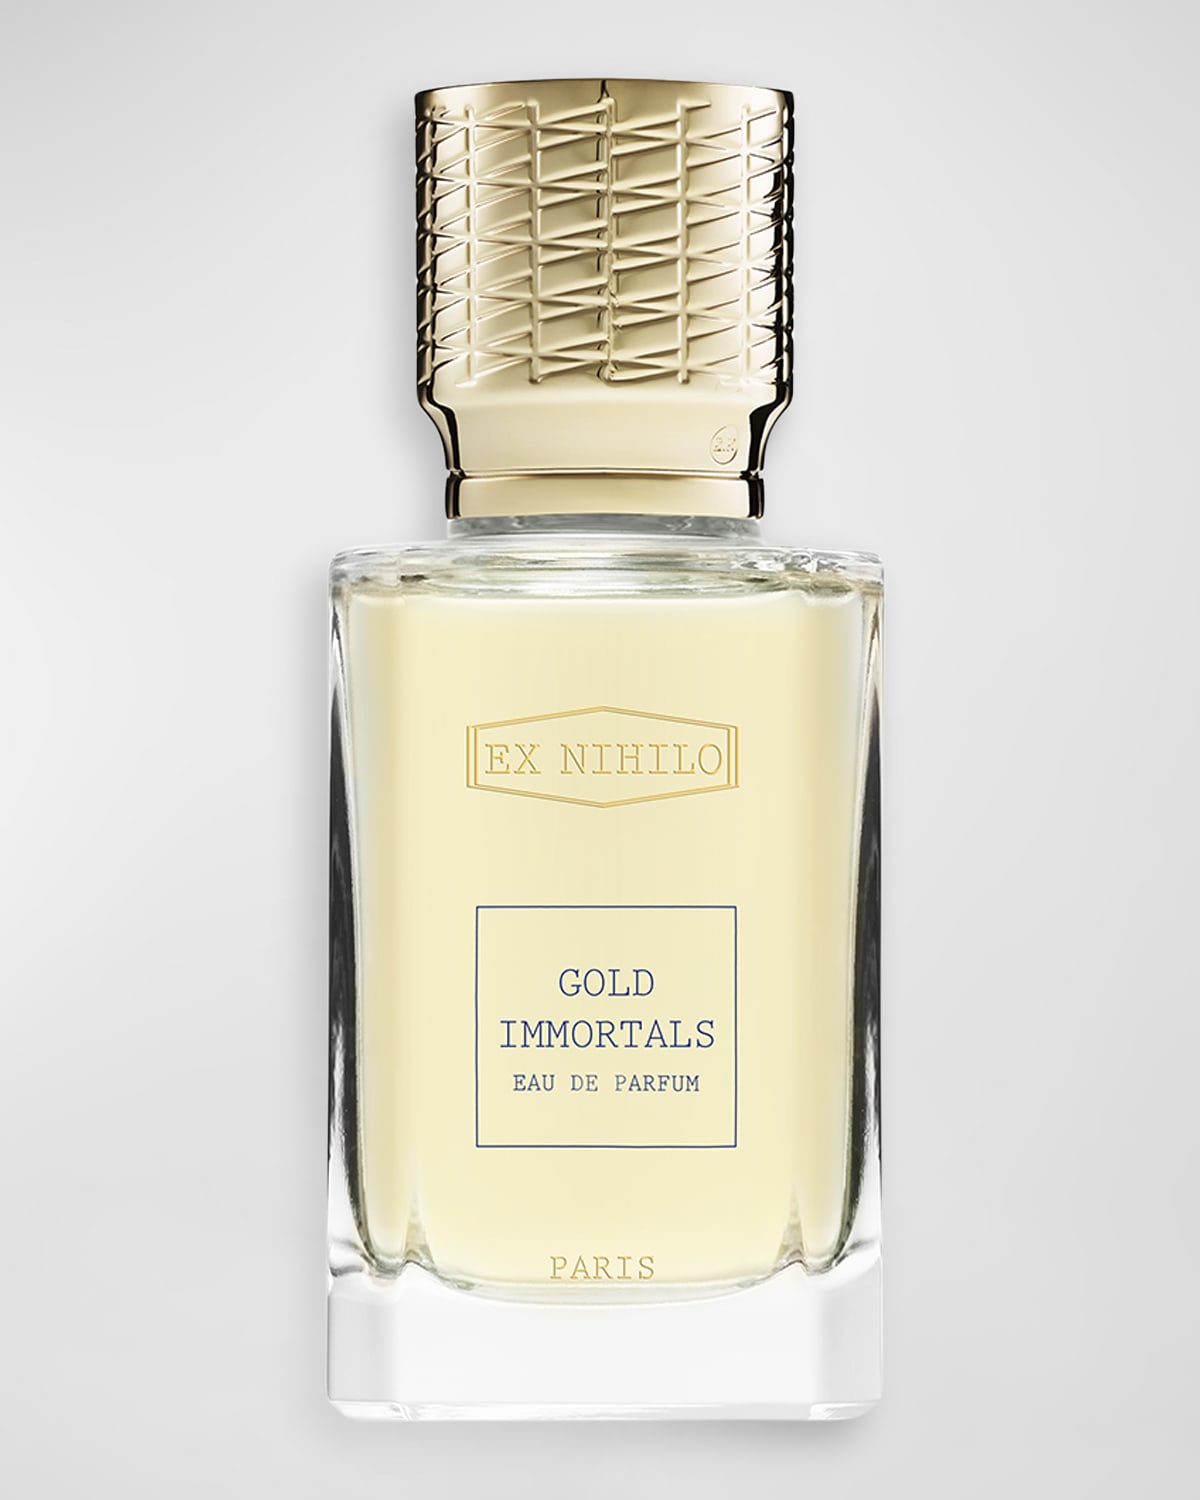 Ex Nihilo Gold Immortals Eau de Parfum, 1.7 oz.